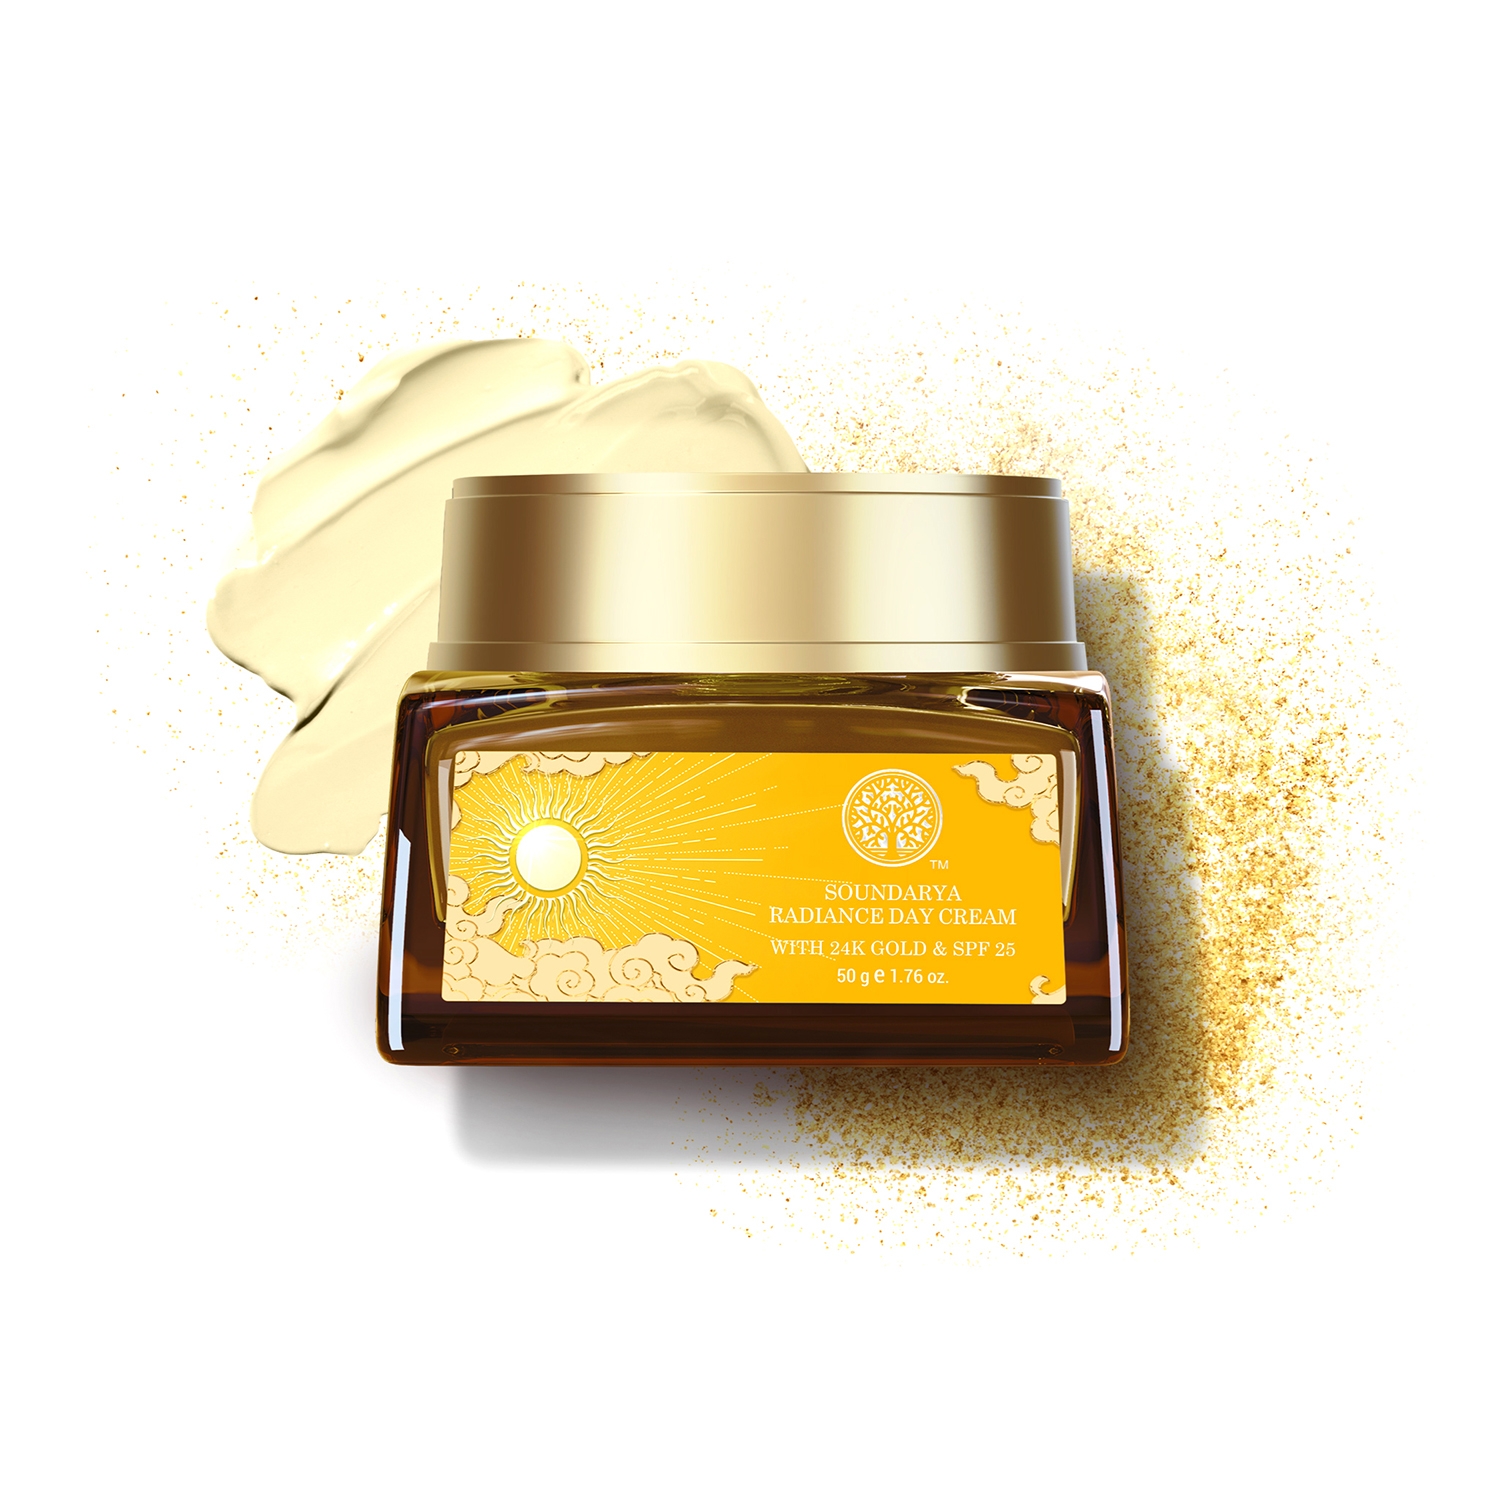 Forest Essentials | Forest Essentials Soundarya Radiance Cream with 24K Gold SPF 25 (50g)